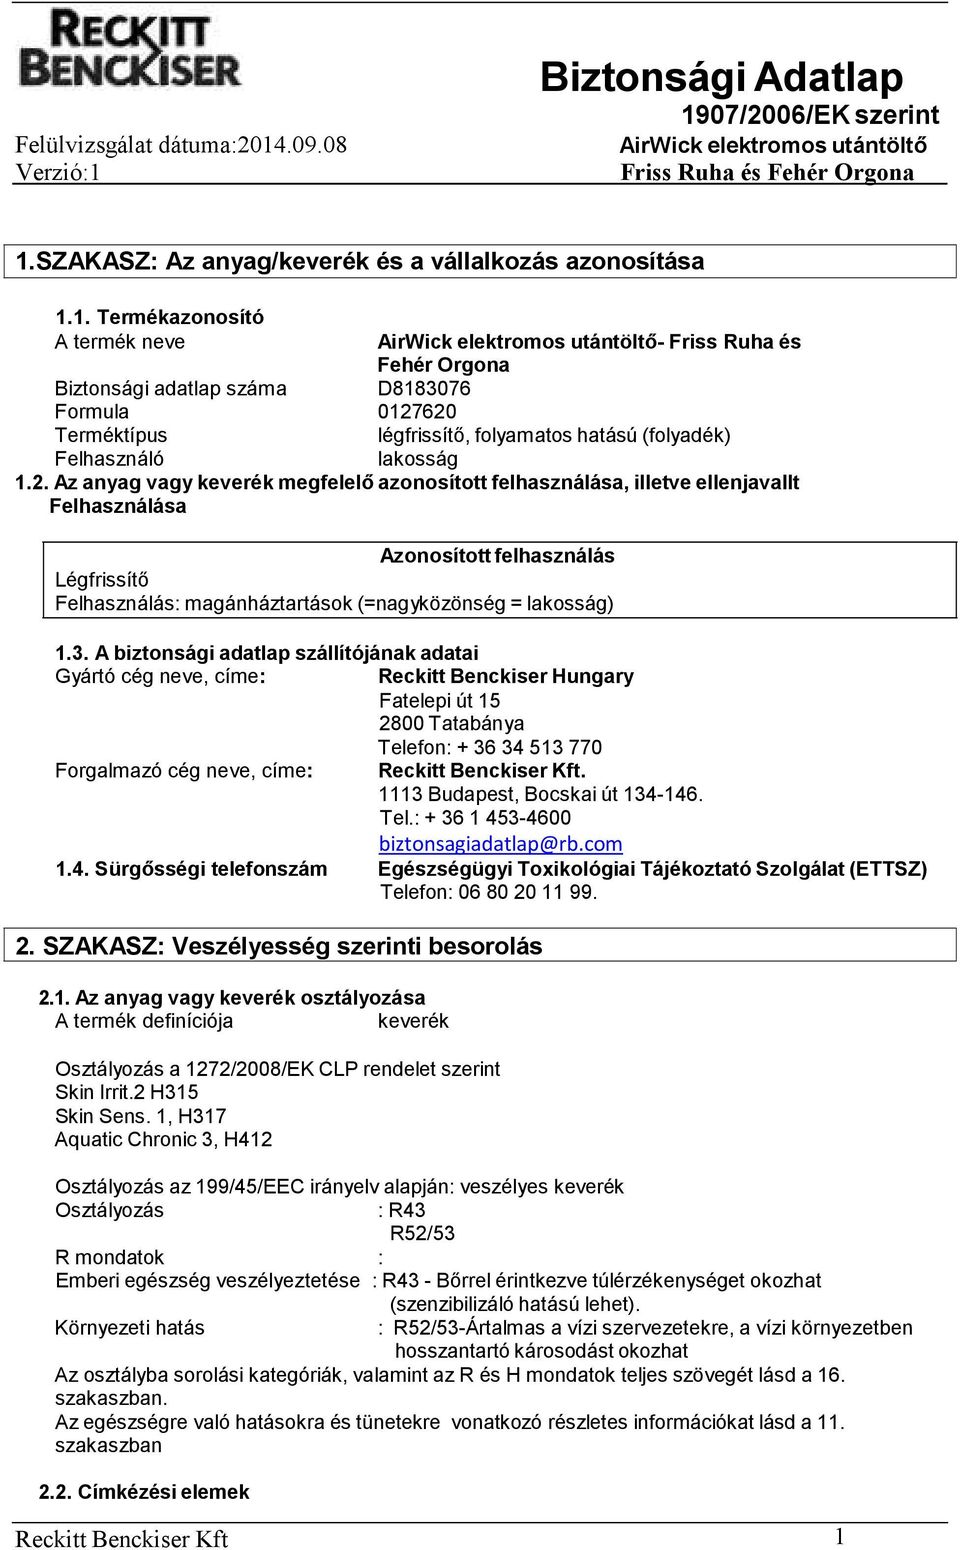 A biztonsági adatlap szállítójának adatai Gyártó cég neve, címe: Reckitt Benckiser Hungary Fatelepi út 15 2800 Tatabánya Telefon: + 36 34 513 770 Forgalmazó cég neve, címe:.